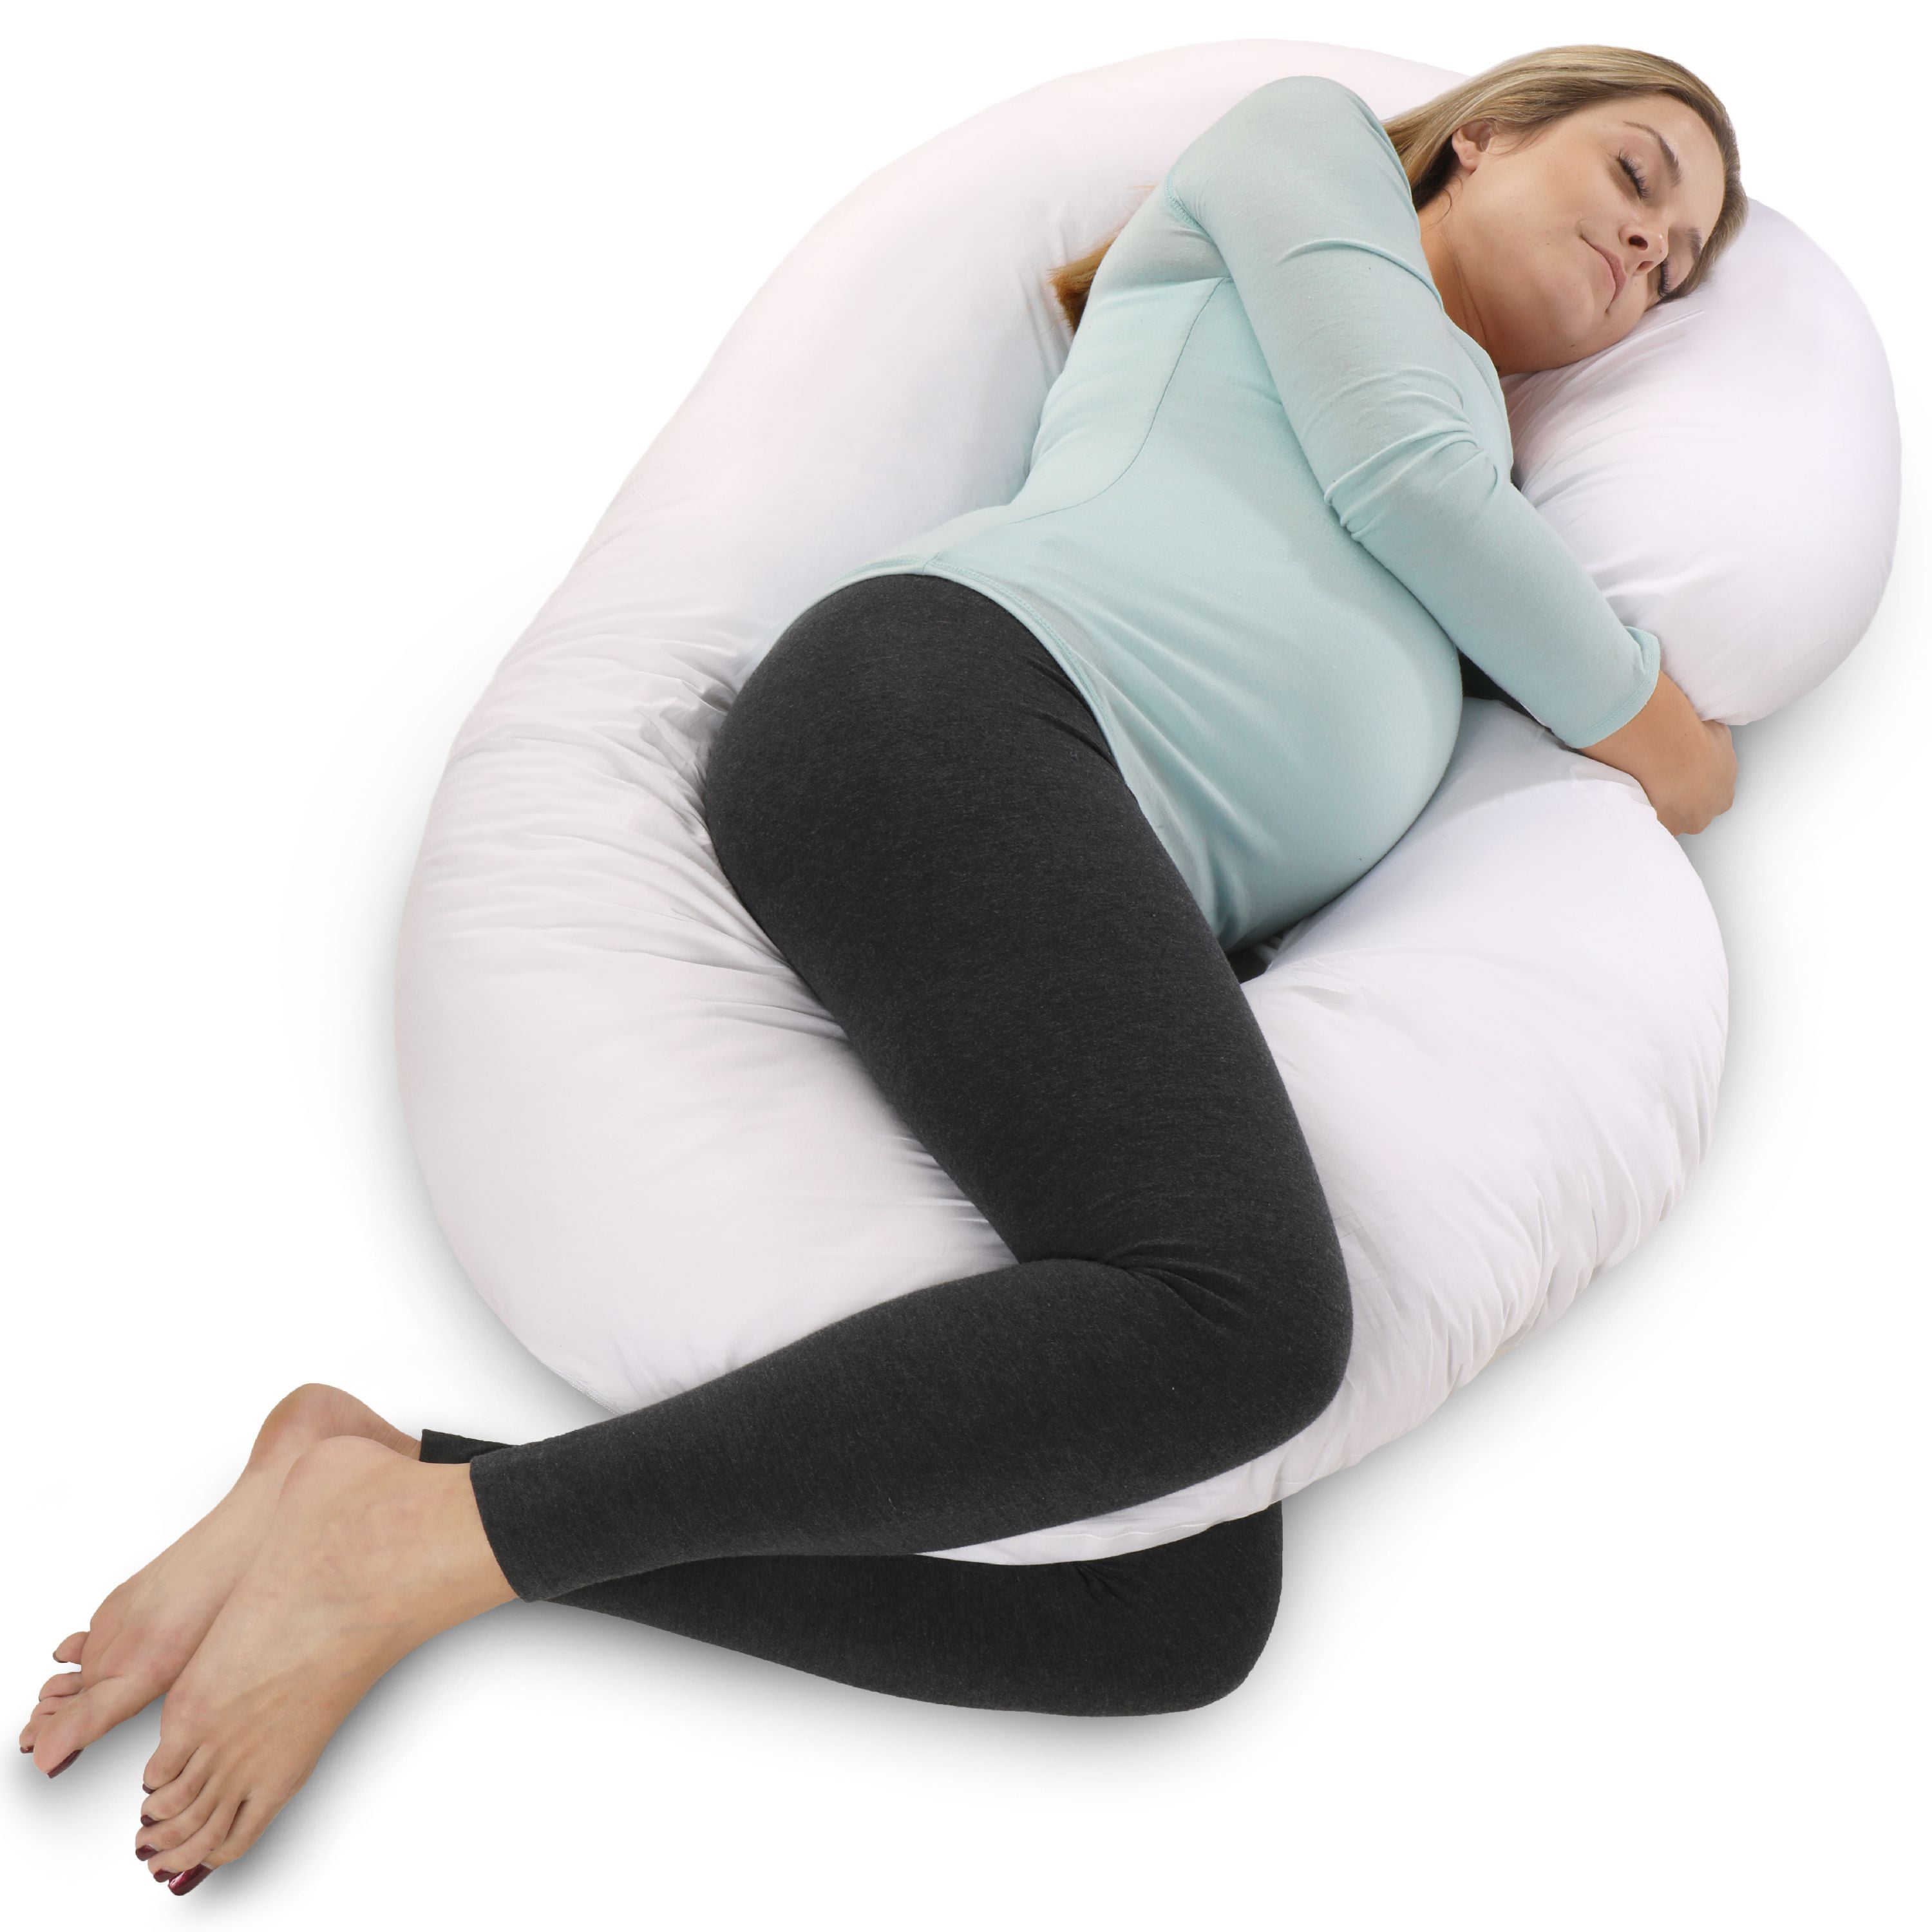 Купить подушку 21. Боди Пиллоу подушка. Подушка для беременных. Подушка для беременных для сна. Подушечка для беременных.